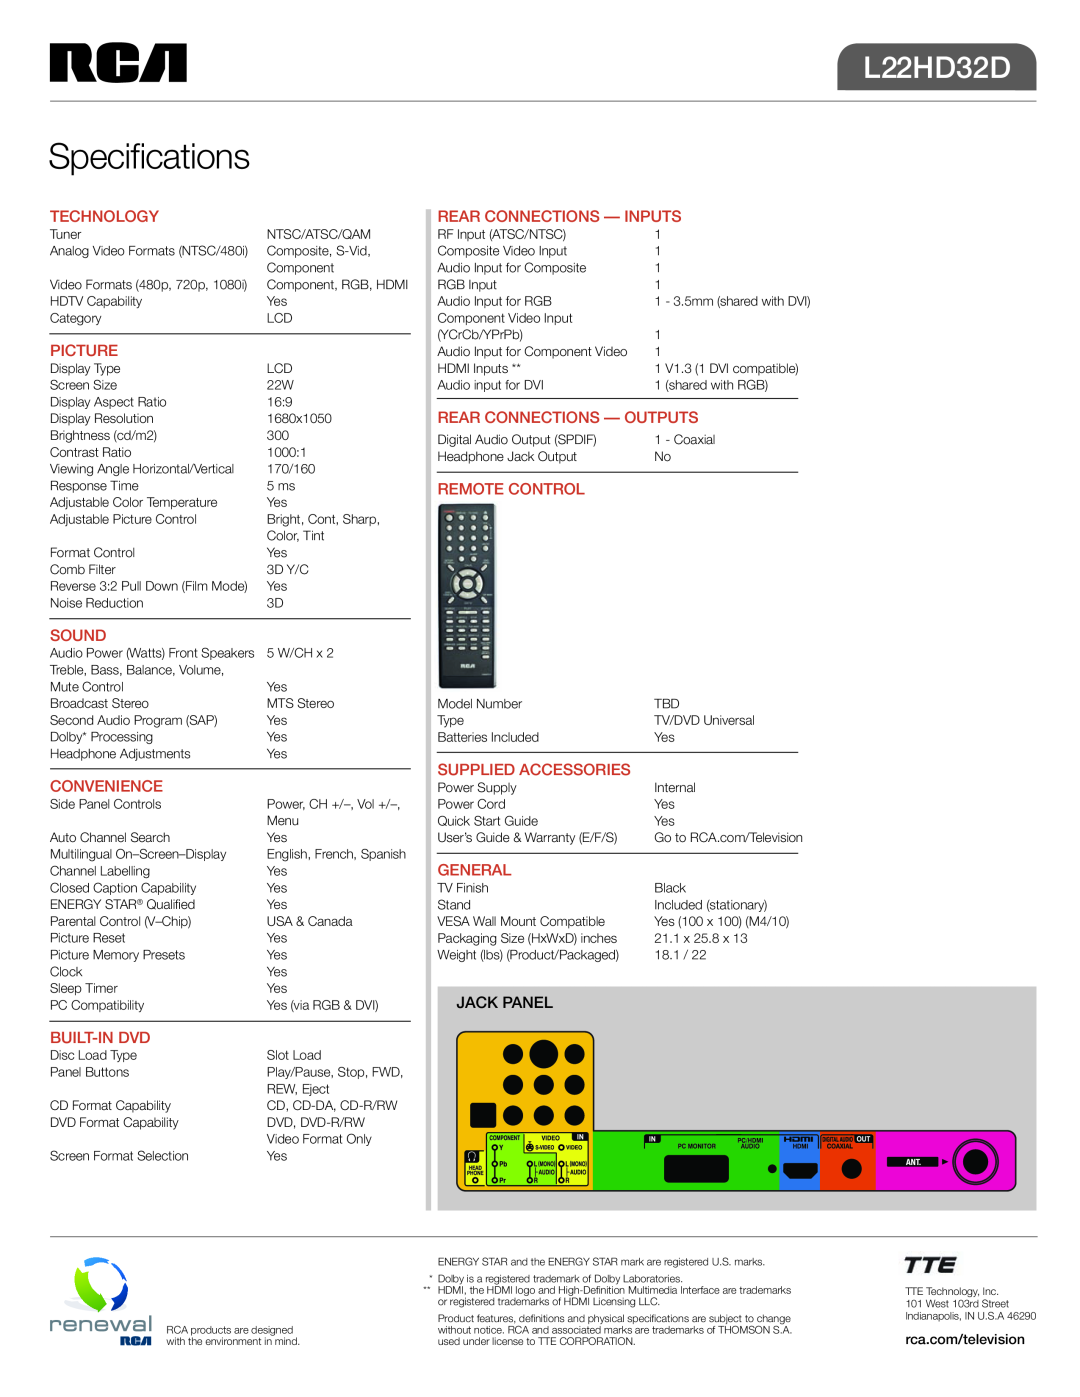 RCA L22HD32D manual Specifications 